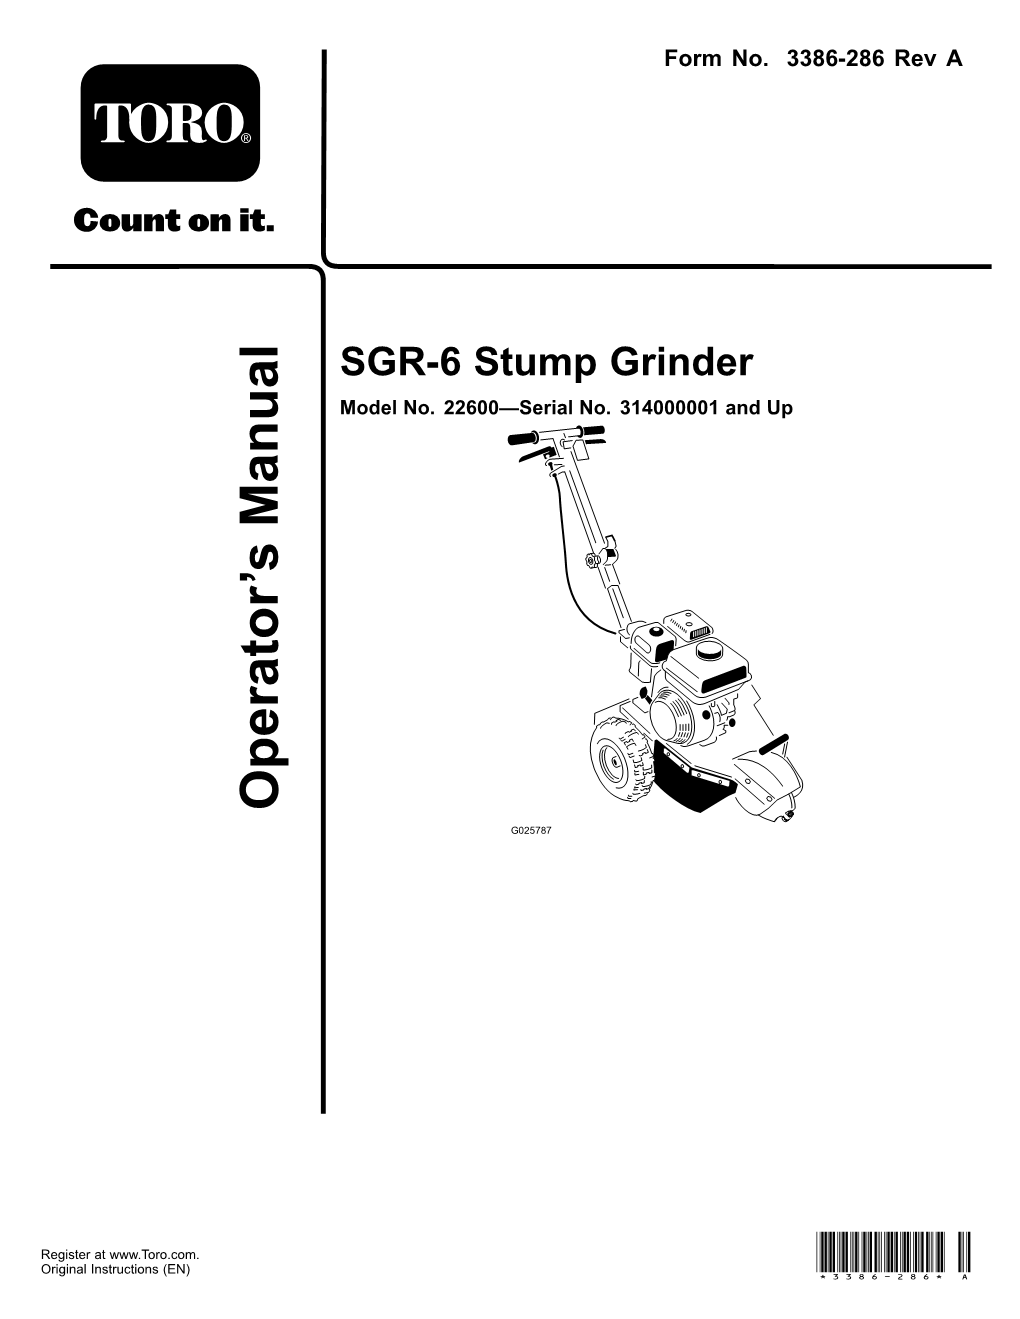 SGR-6 Stump Grinder Model No